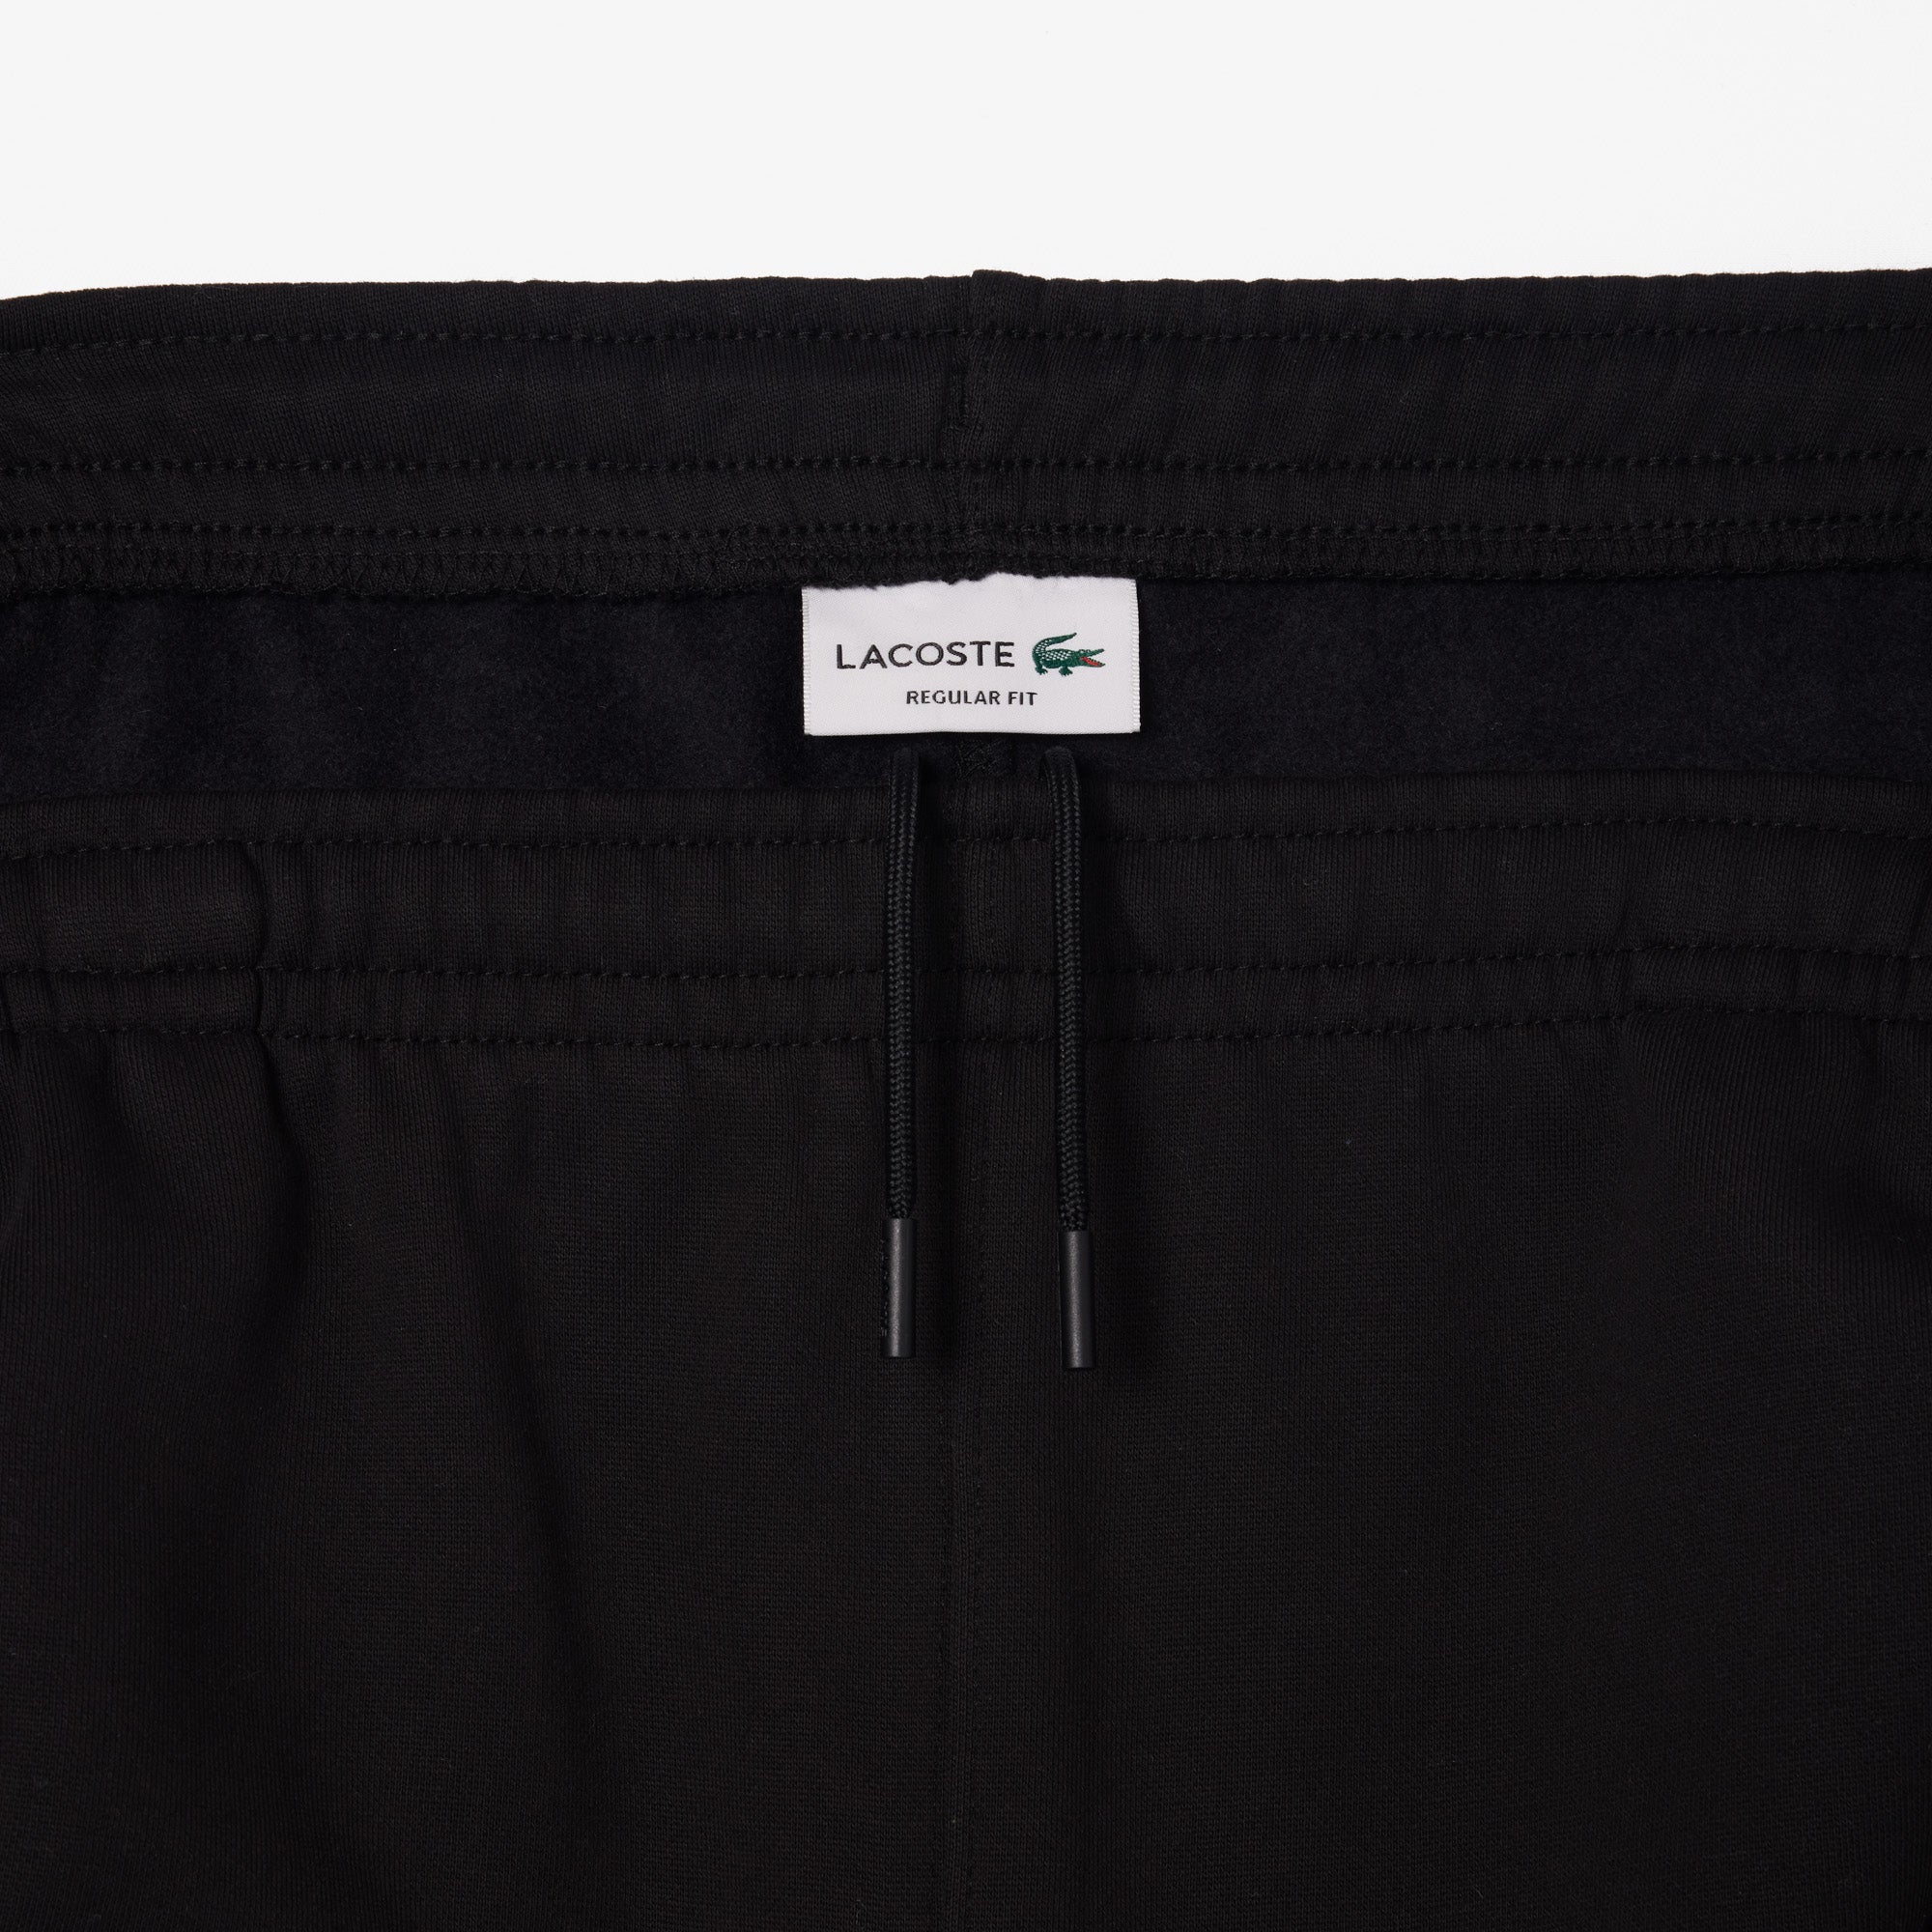 Lacoste men's plush shorts Black 